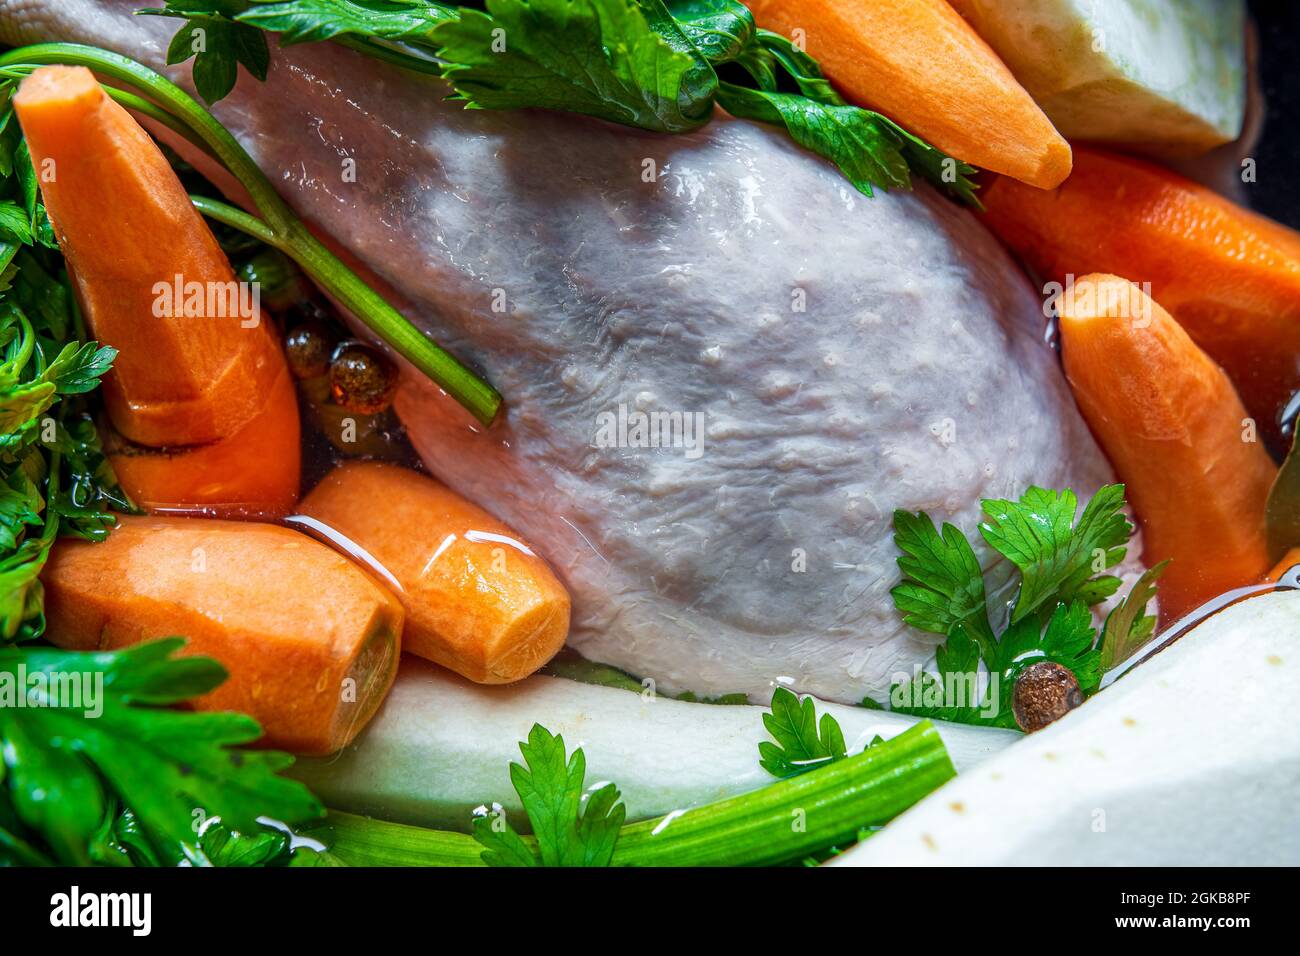 Zuppa di pollo tradizionale e lucidata (brodo) prima della cottura. Primo piano - su ingredienti crudi: Pollo, carote, sedano e prezzemolo in acqua. Pasto sano. Foto Stock